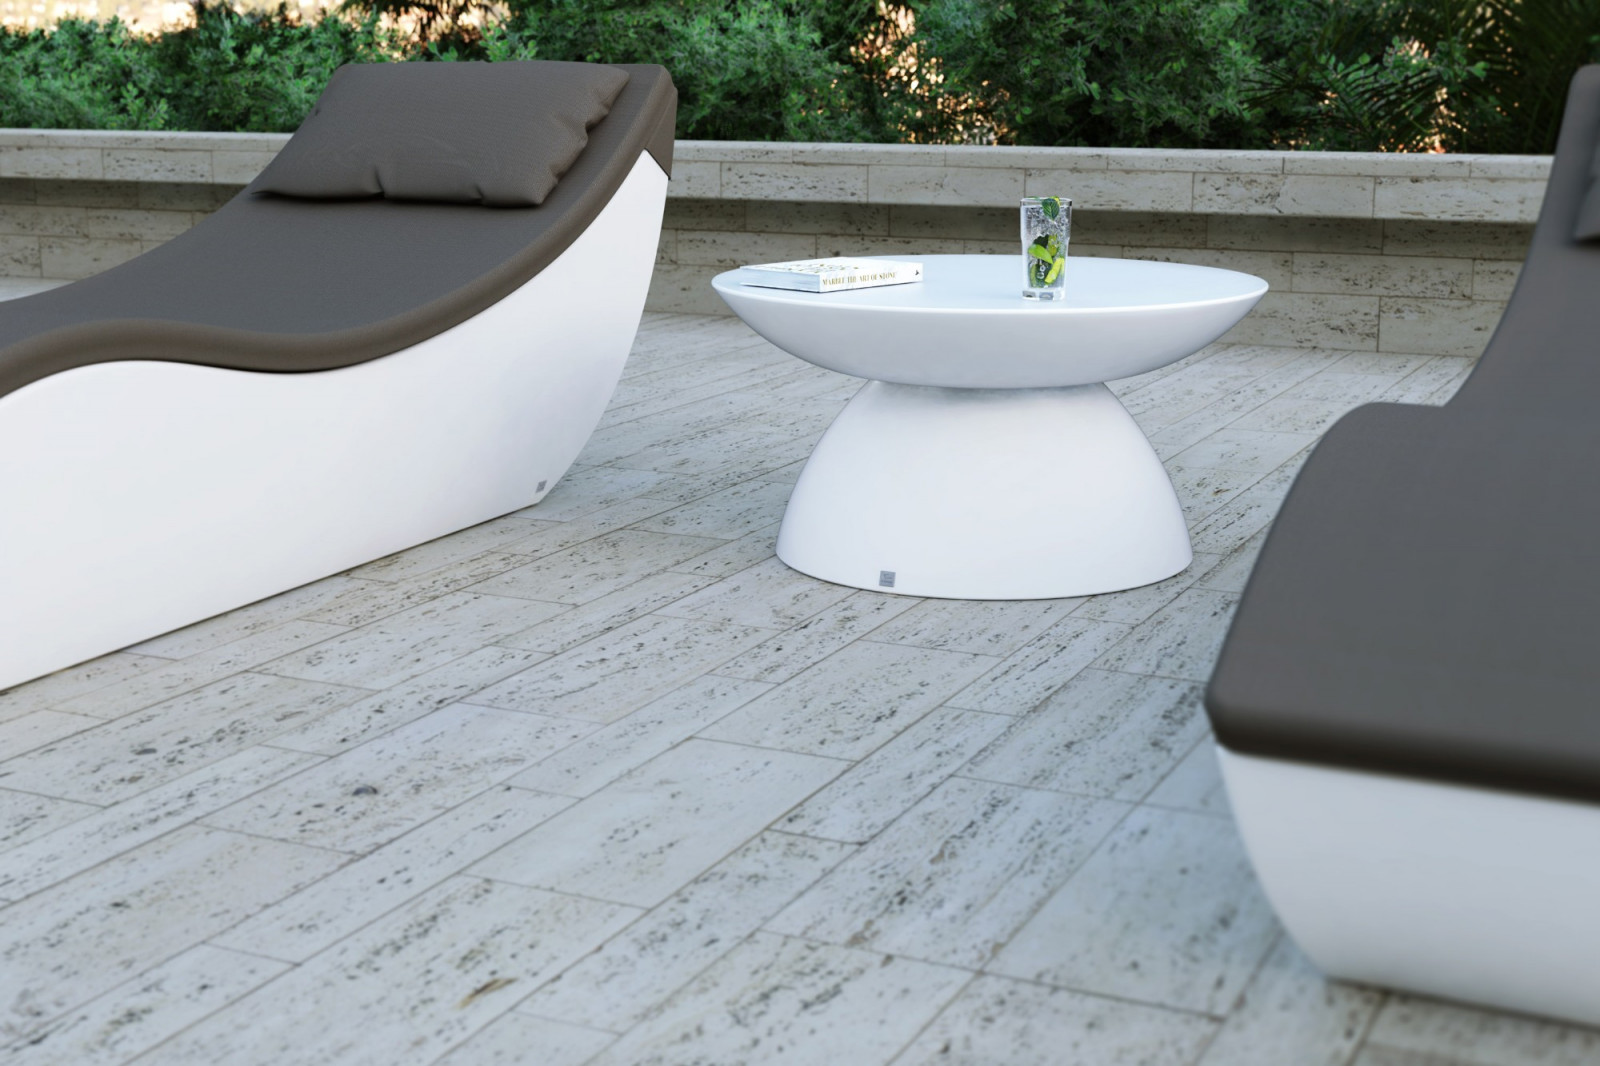 coffee-large-table-outdoor-terrace-garden-pool-elegant-white-matte-oceano-gansk-0-2641-1600-1400-100